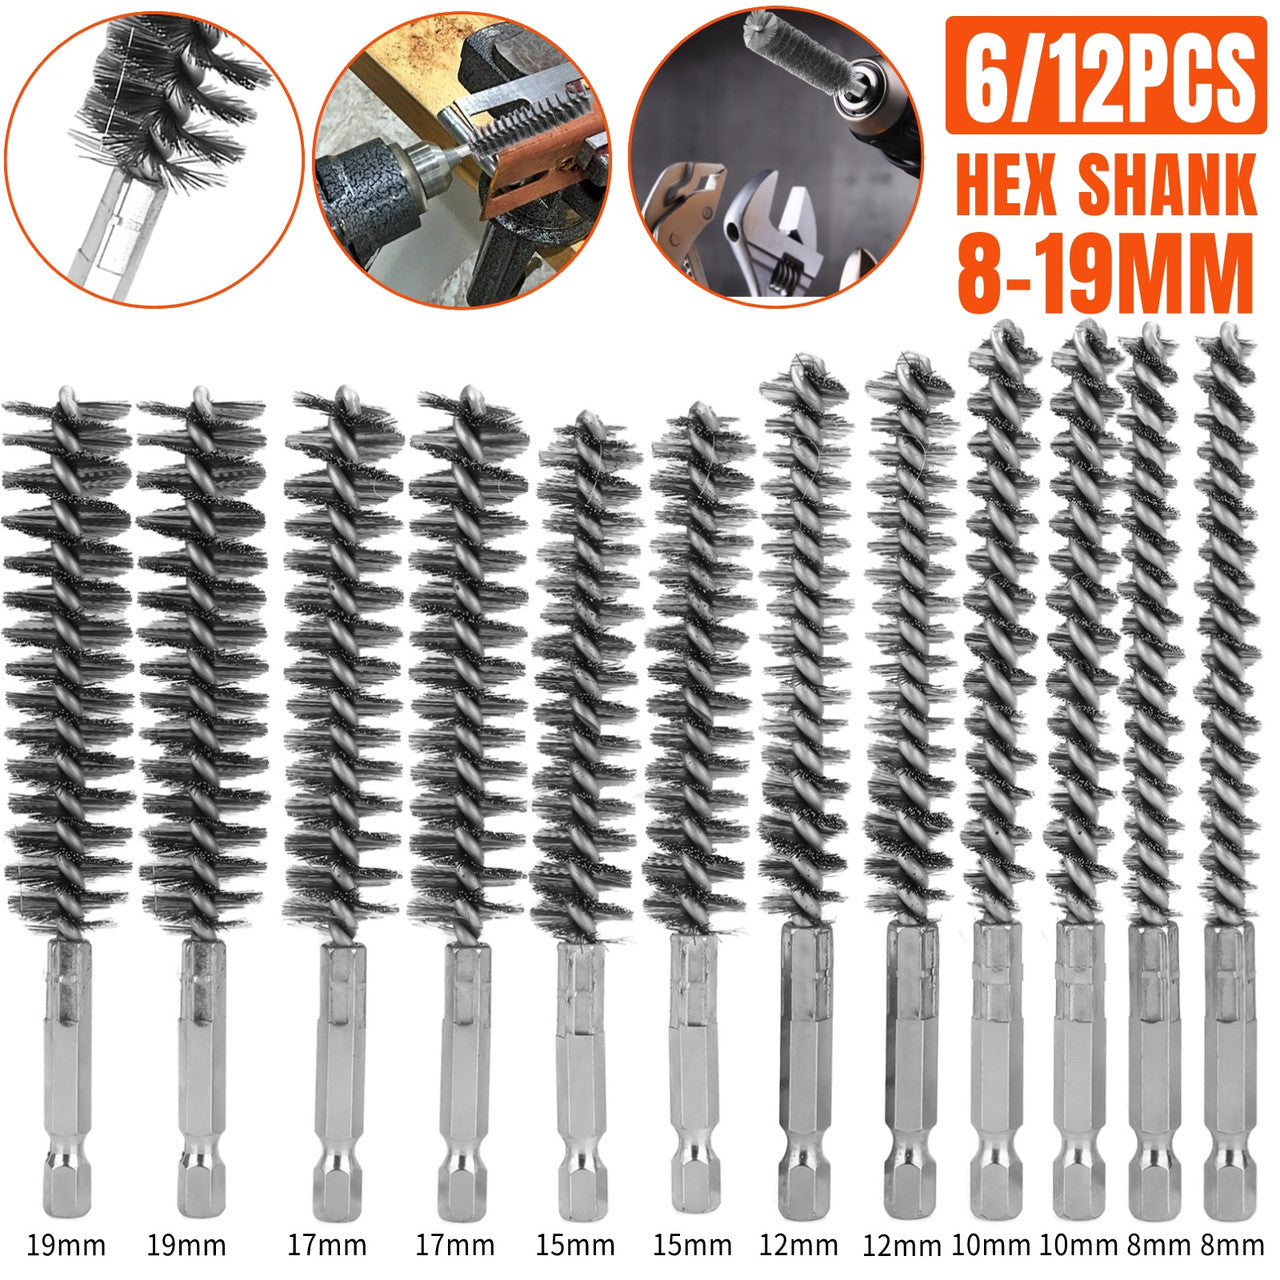 6 Packs Stainless Steel Bore Brush-Hex Shank Twisted Wire Bore Brushes (8MM, 10MM, 12MM, 15MM, 17MM, 19MM)